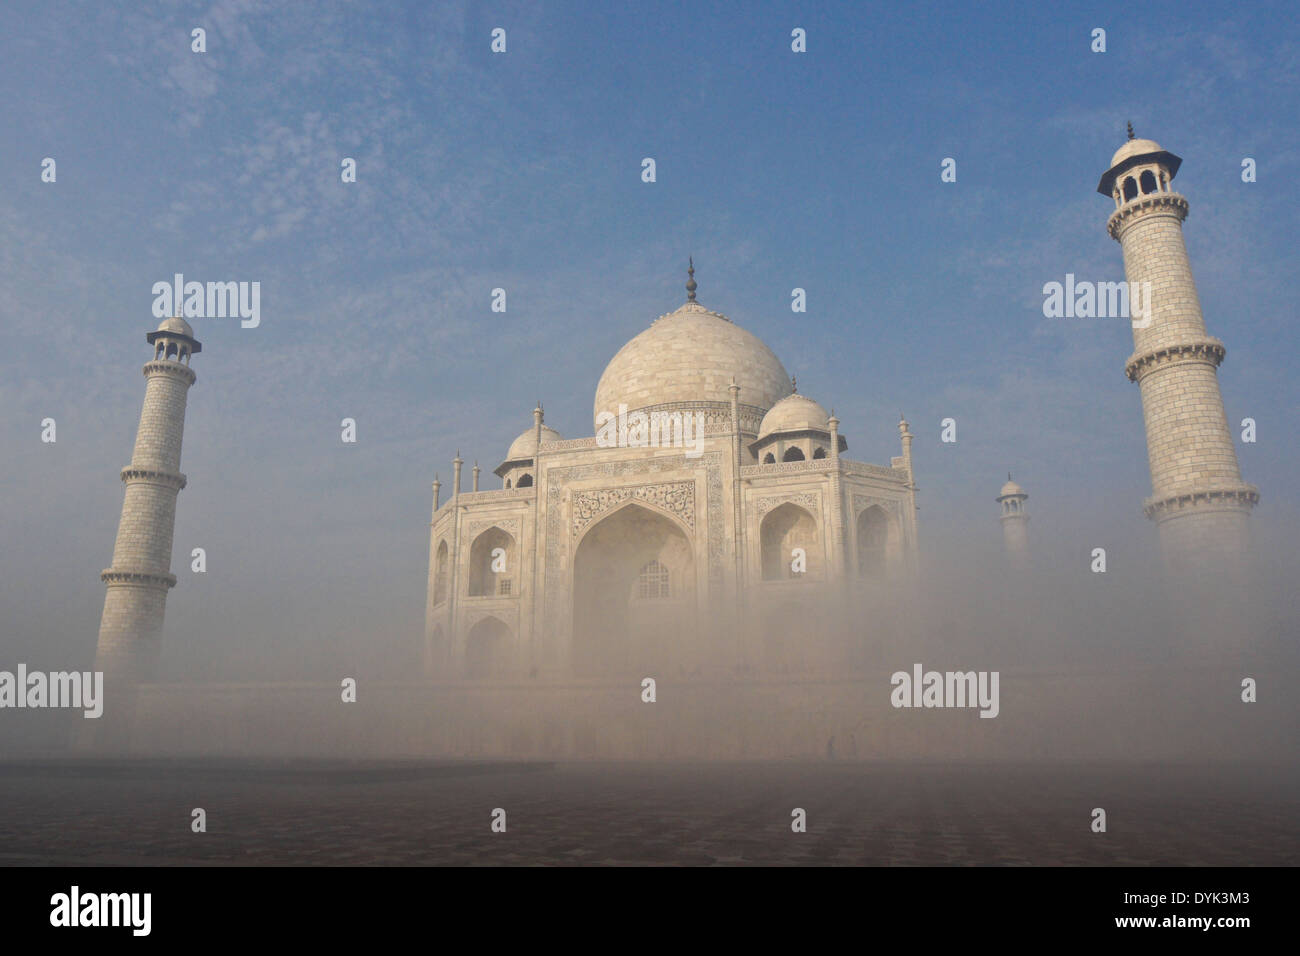 Taj Mahal on a foggy morning, Agra, India Stock Photo